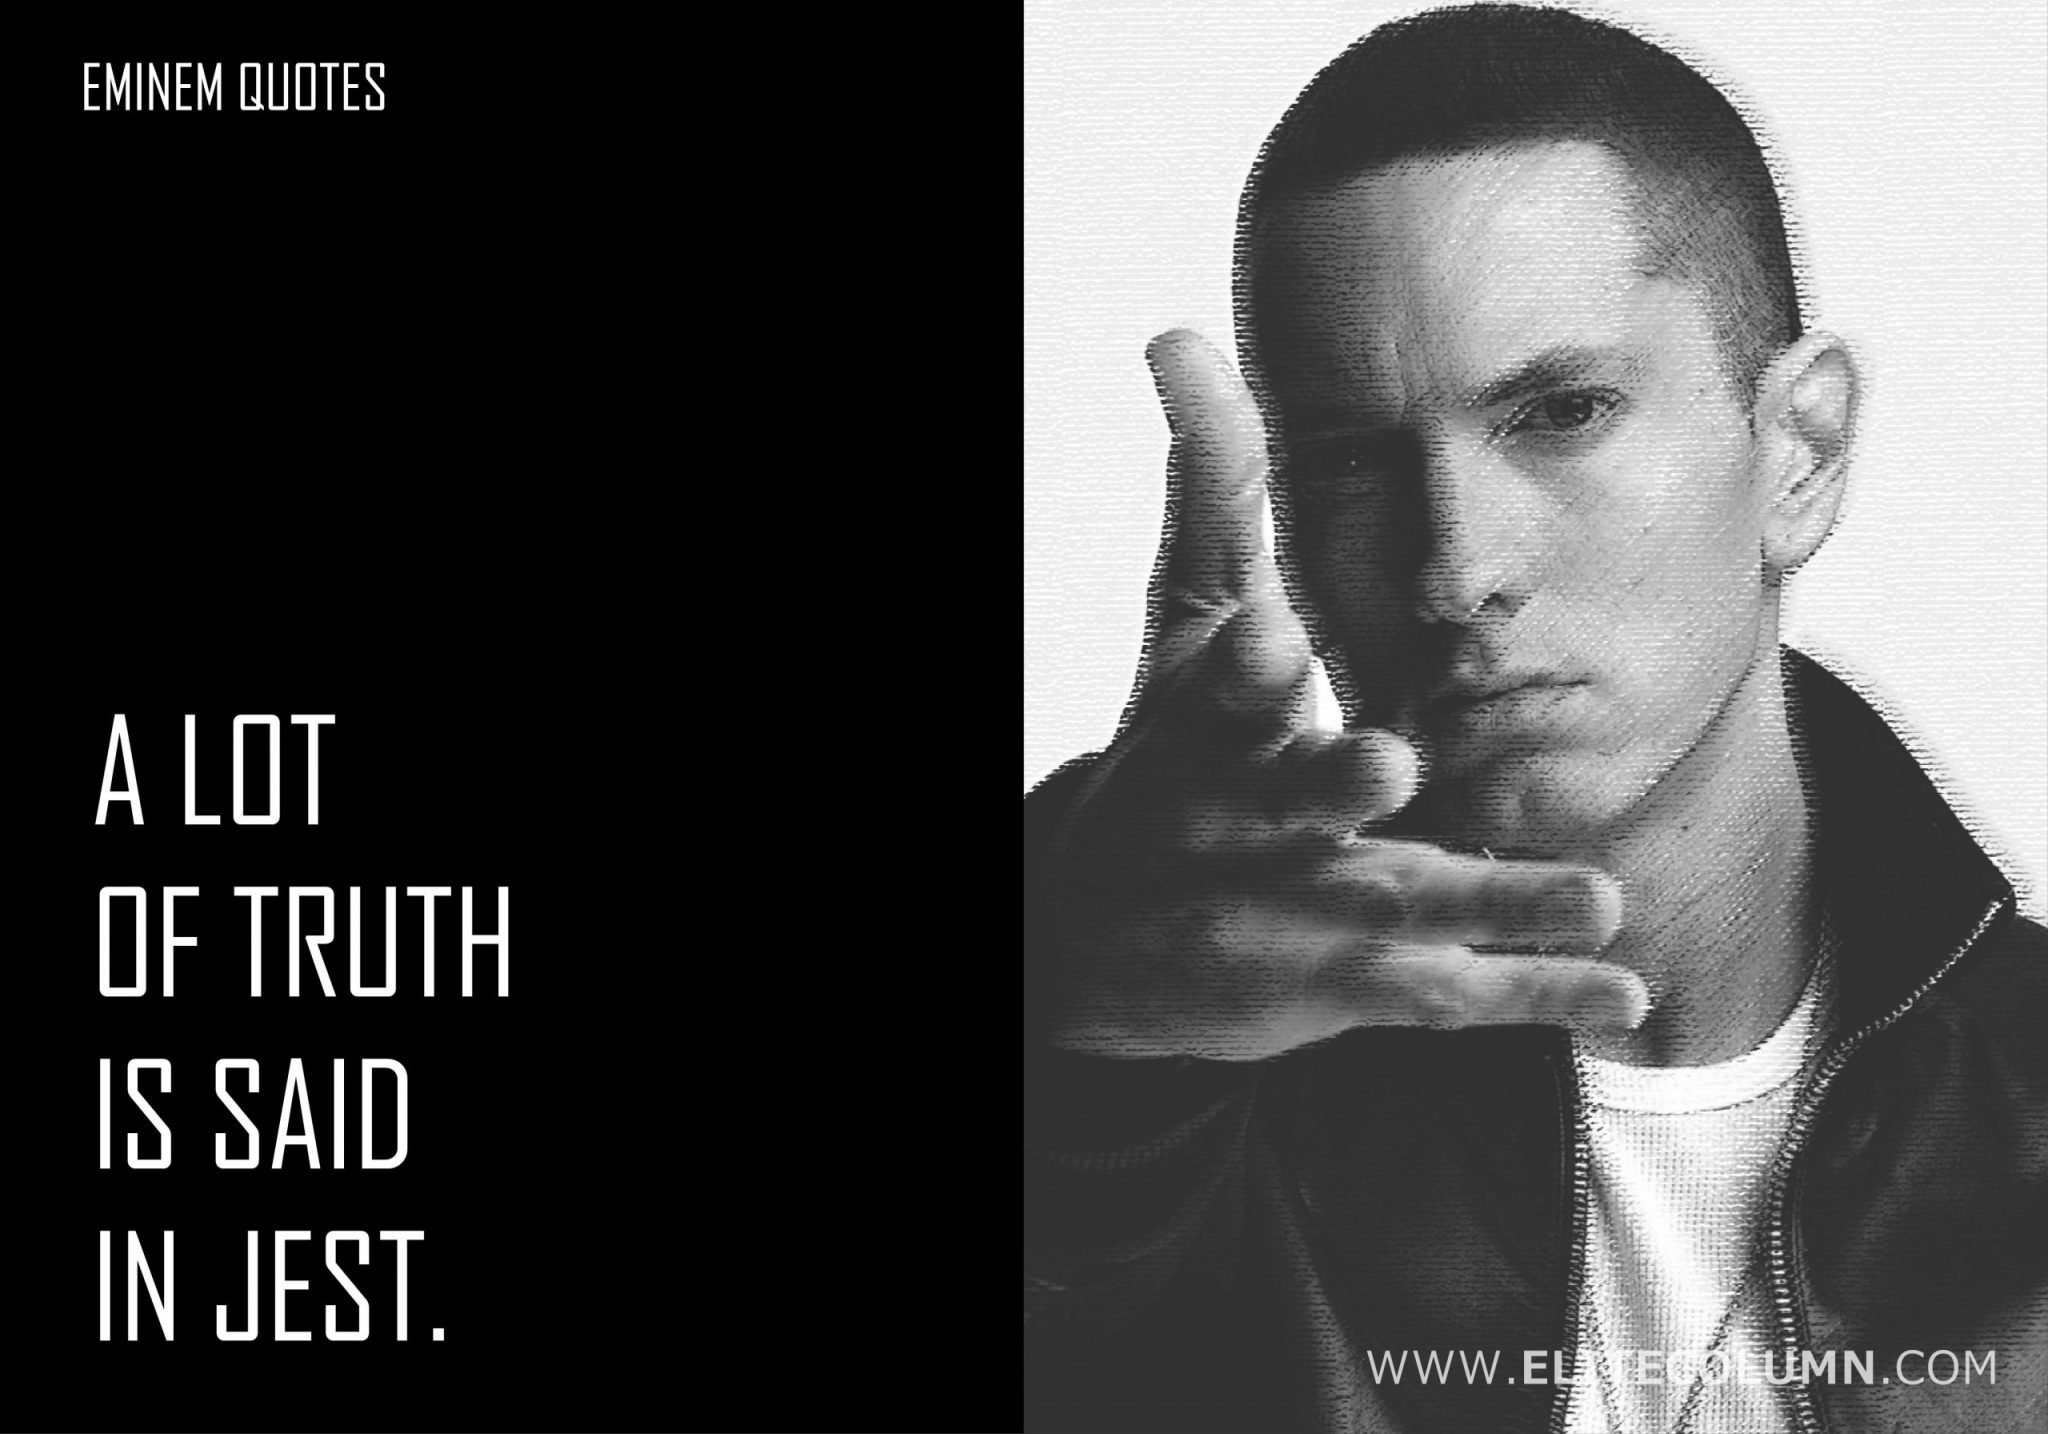 Eminem Quotes (9)